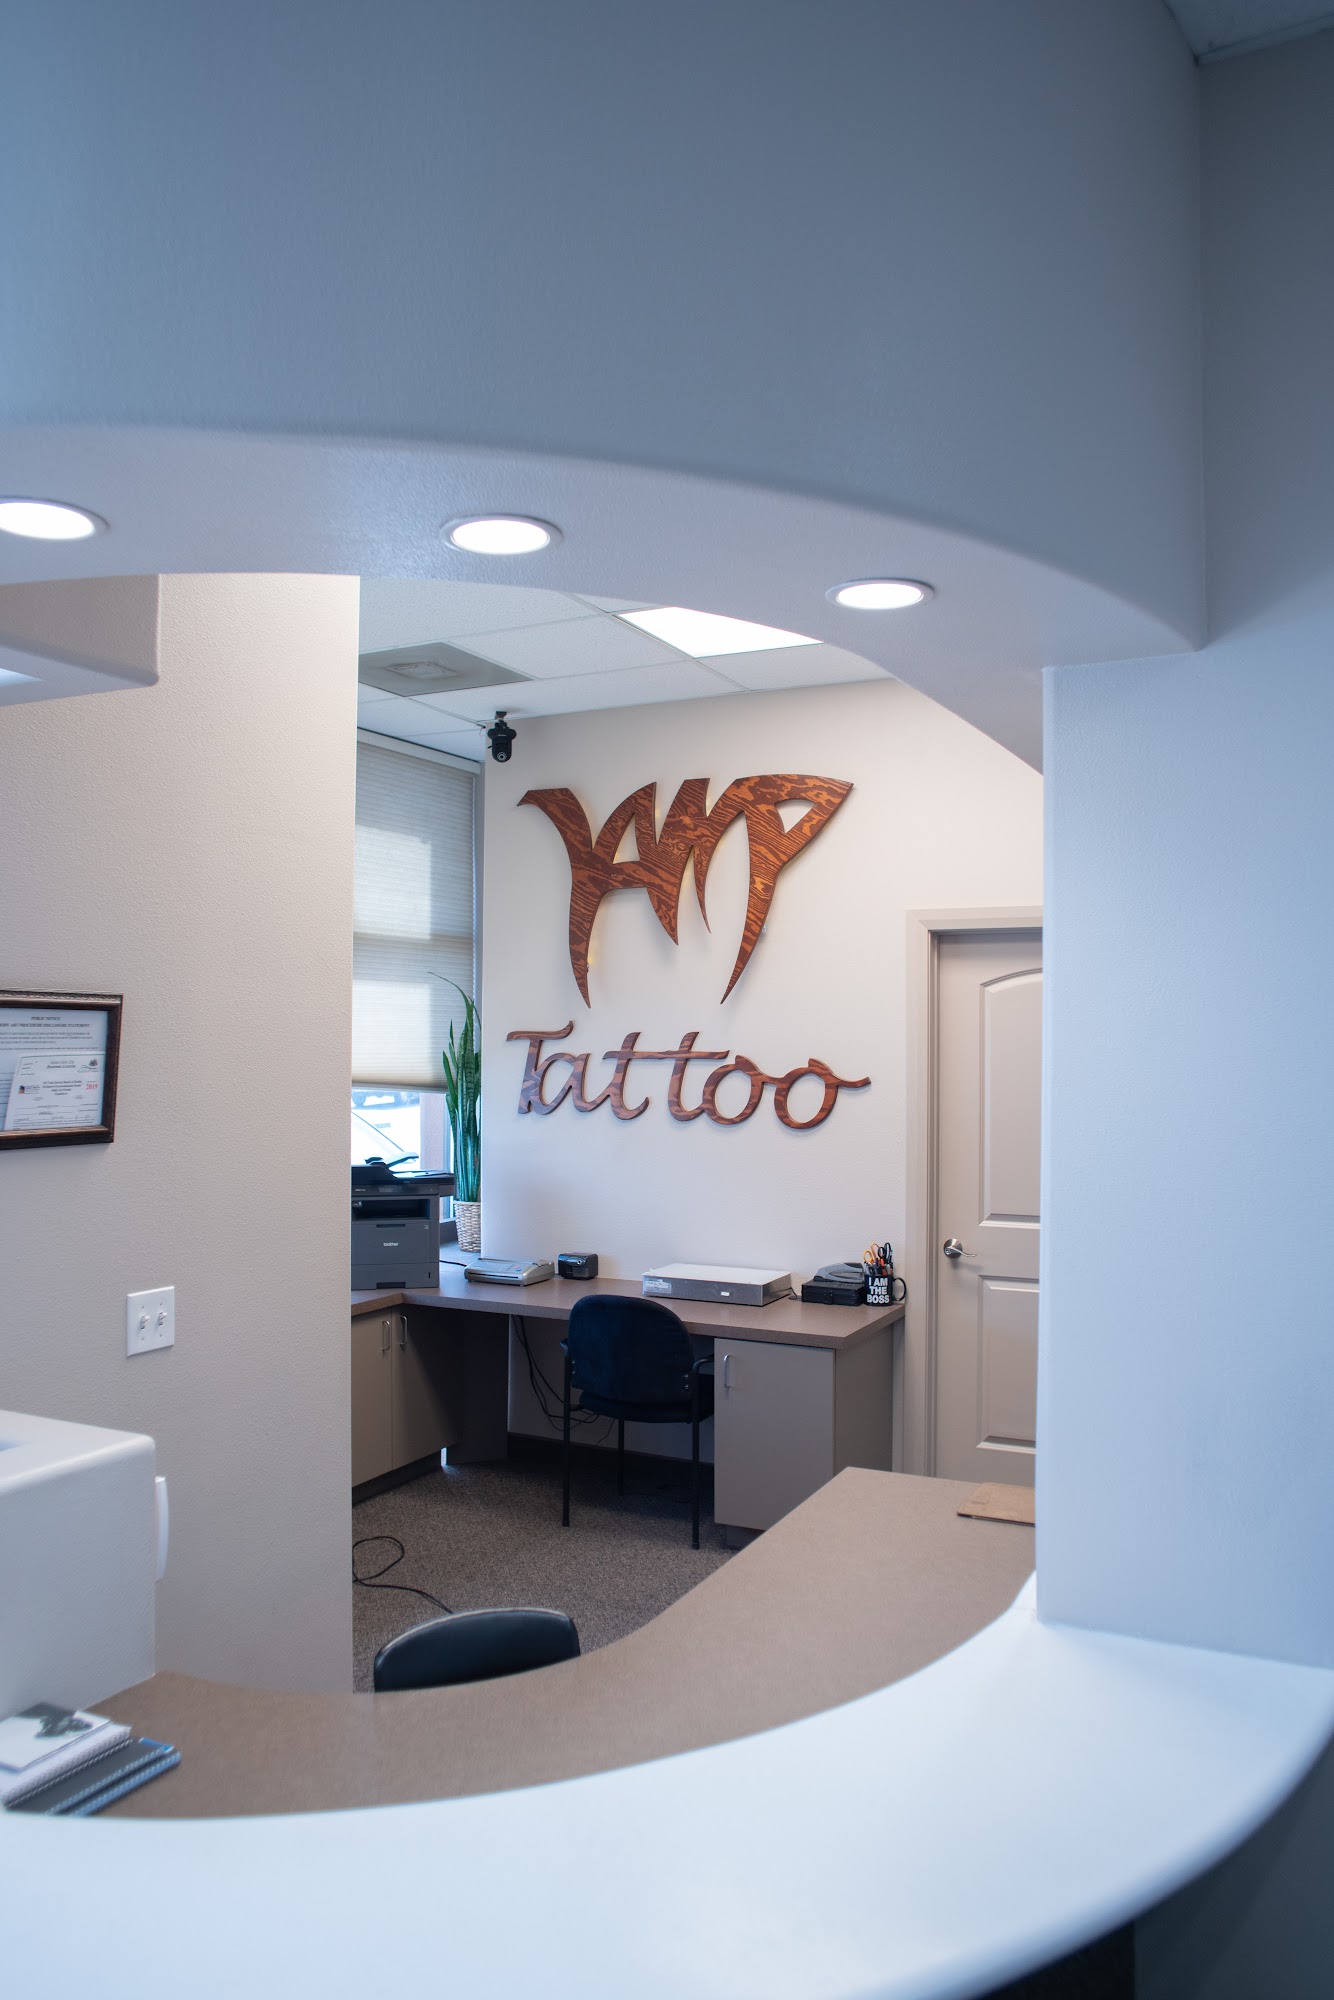 Vamp Body Art piercings and tattoo studio 2313 Santa Clara Dr J1, Santa Clara Utah 84765